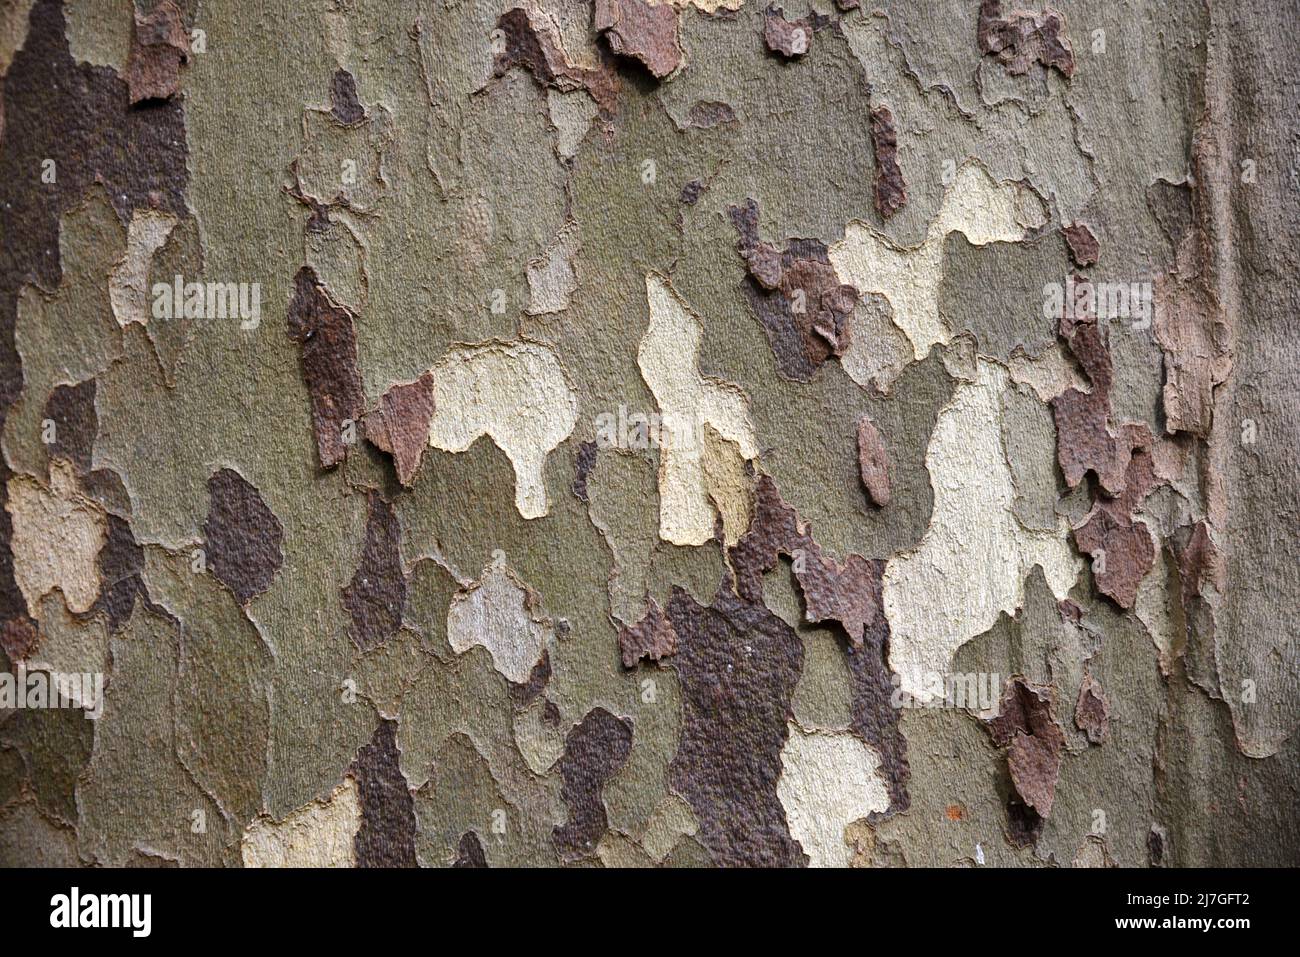 Tarnmuster des Schälbarks des gewöhnlichen Ebenenbaums, Platanus x acerifolia oder Platanus x hispanica oder hybrider Ebenenbaum Stockfoto